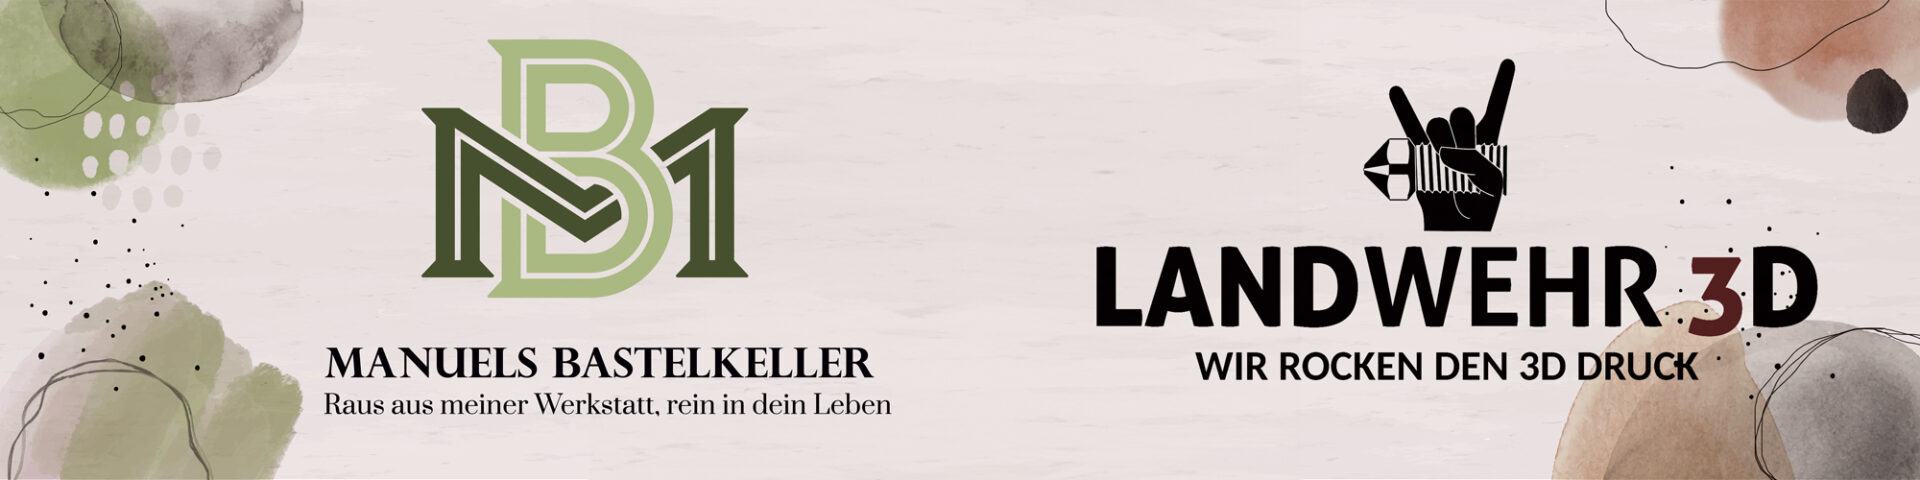 Banner Bastelkeller und Landwehr 3D